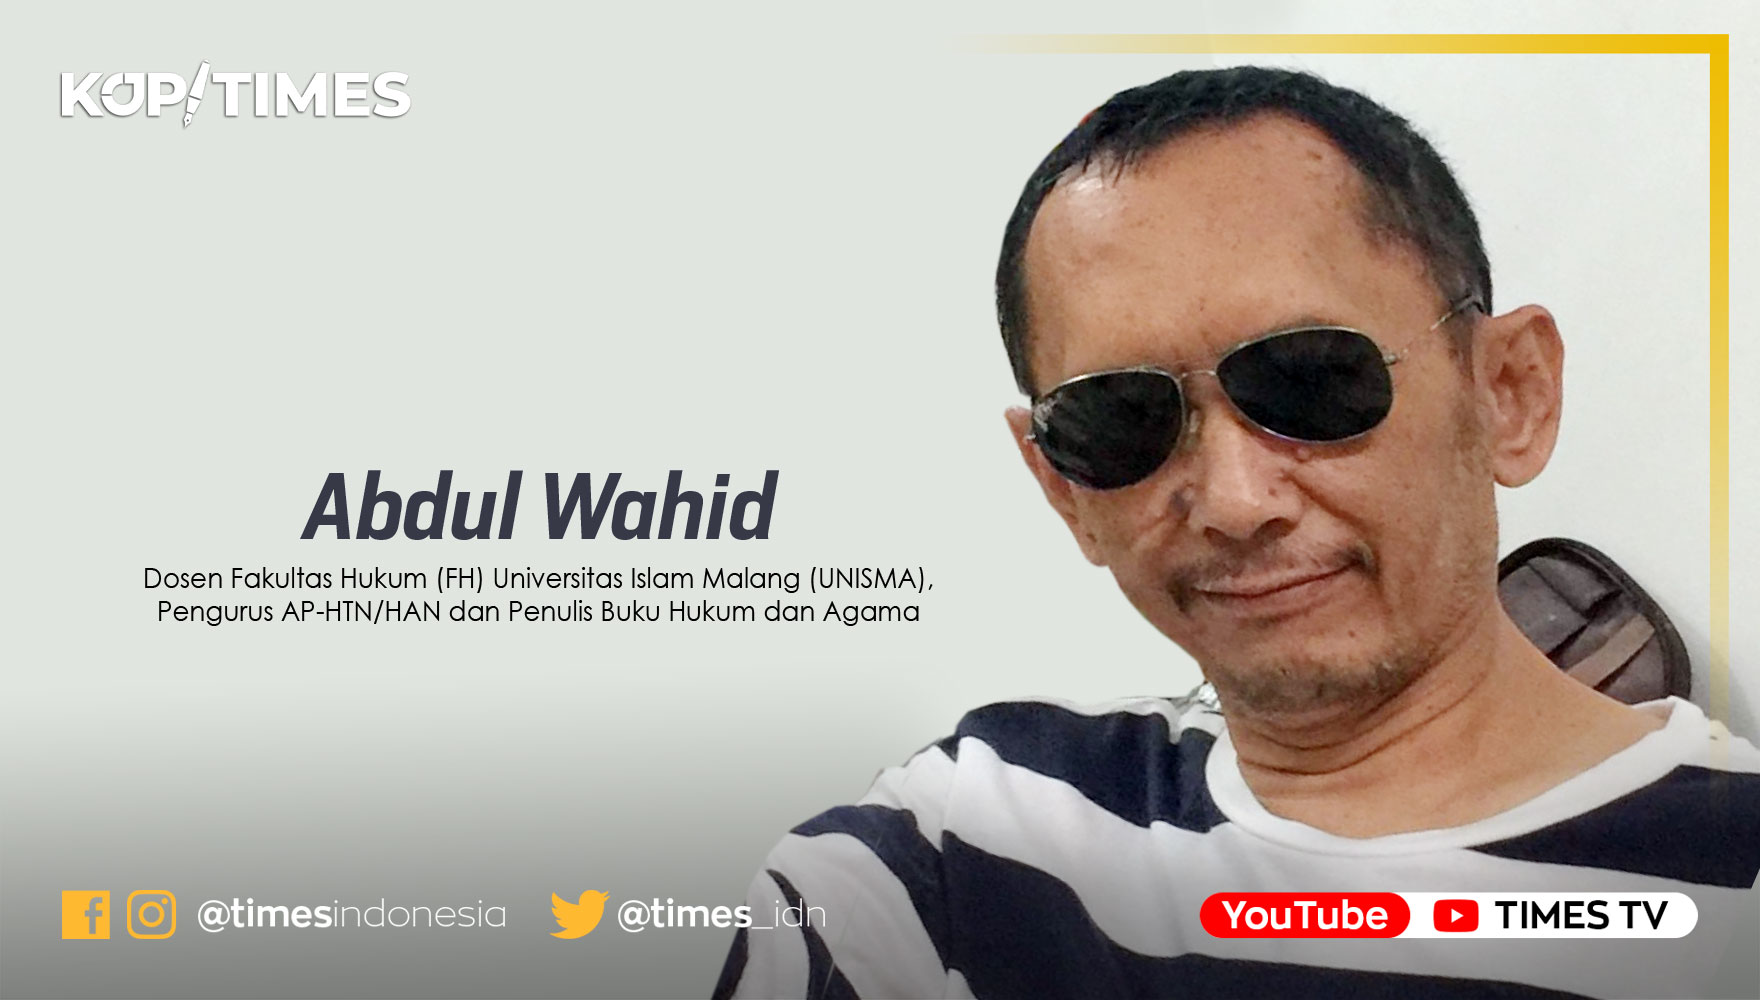 Abdul Wahid, Dosen Fakultas Hukum (FH) Universitas Islam Malang (UNISMA), dan Penulis Buku Hukum dan Agama.